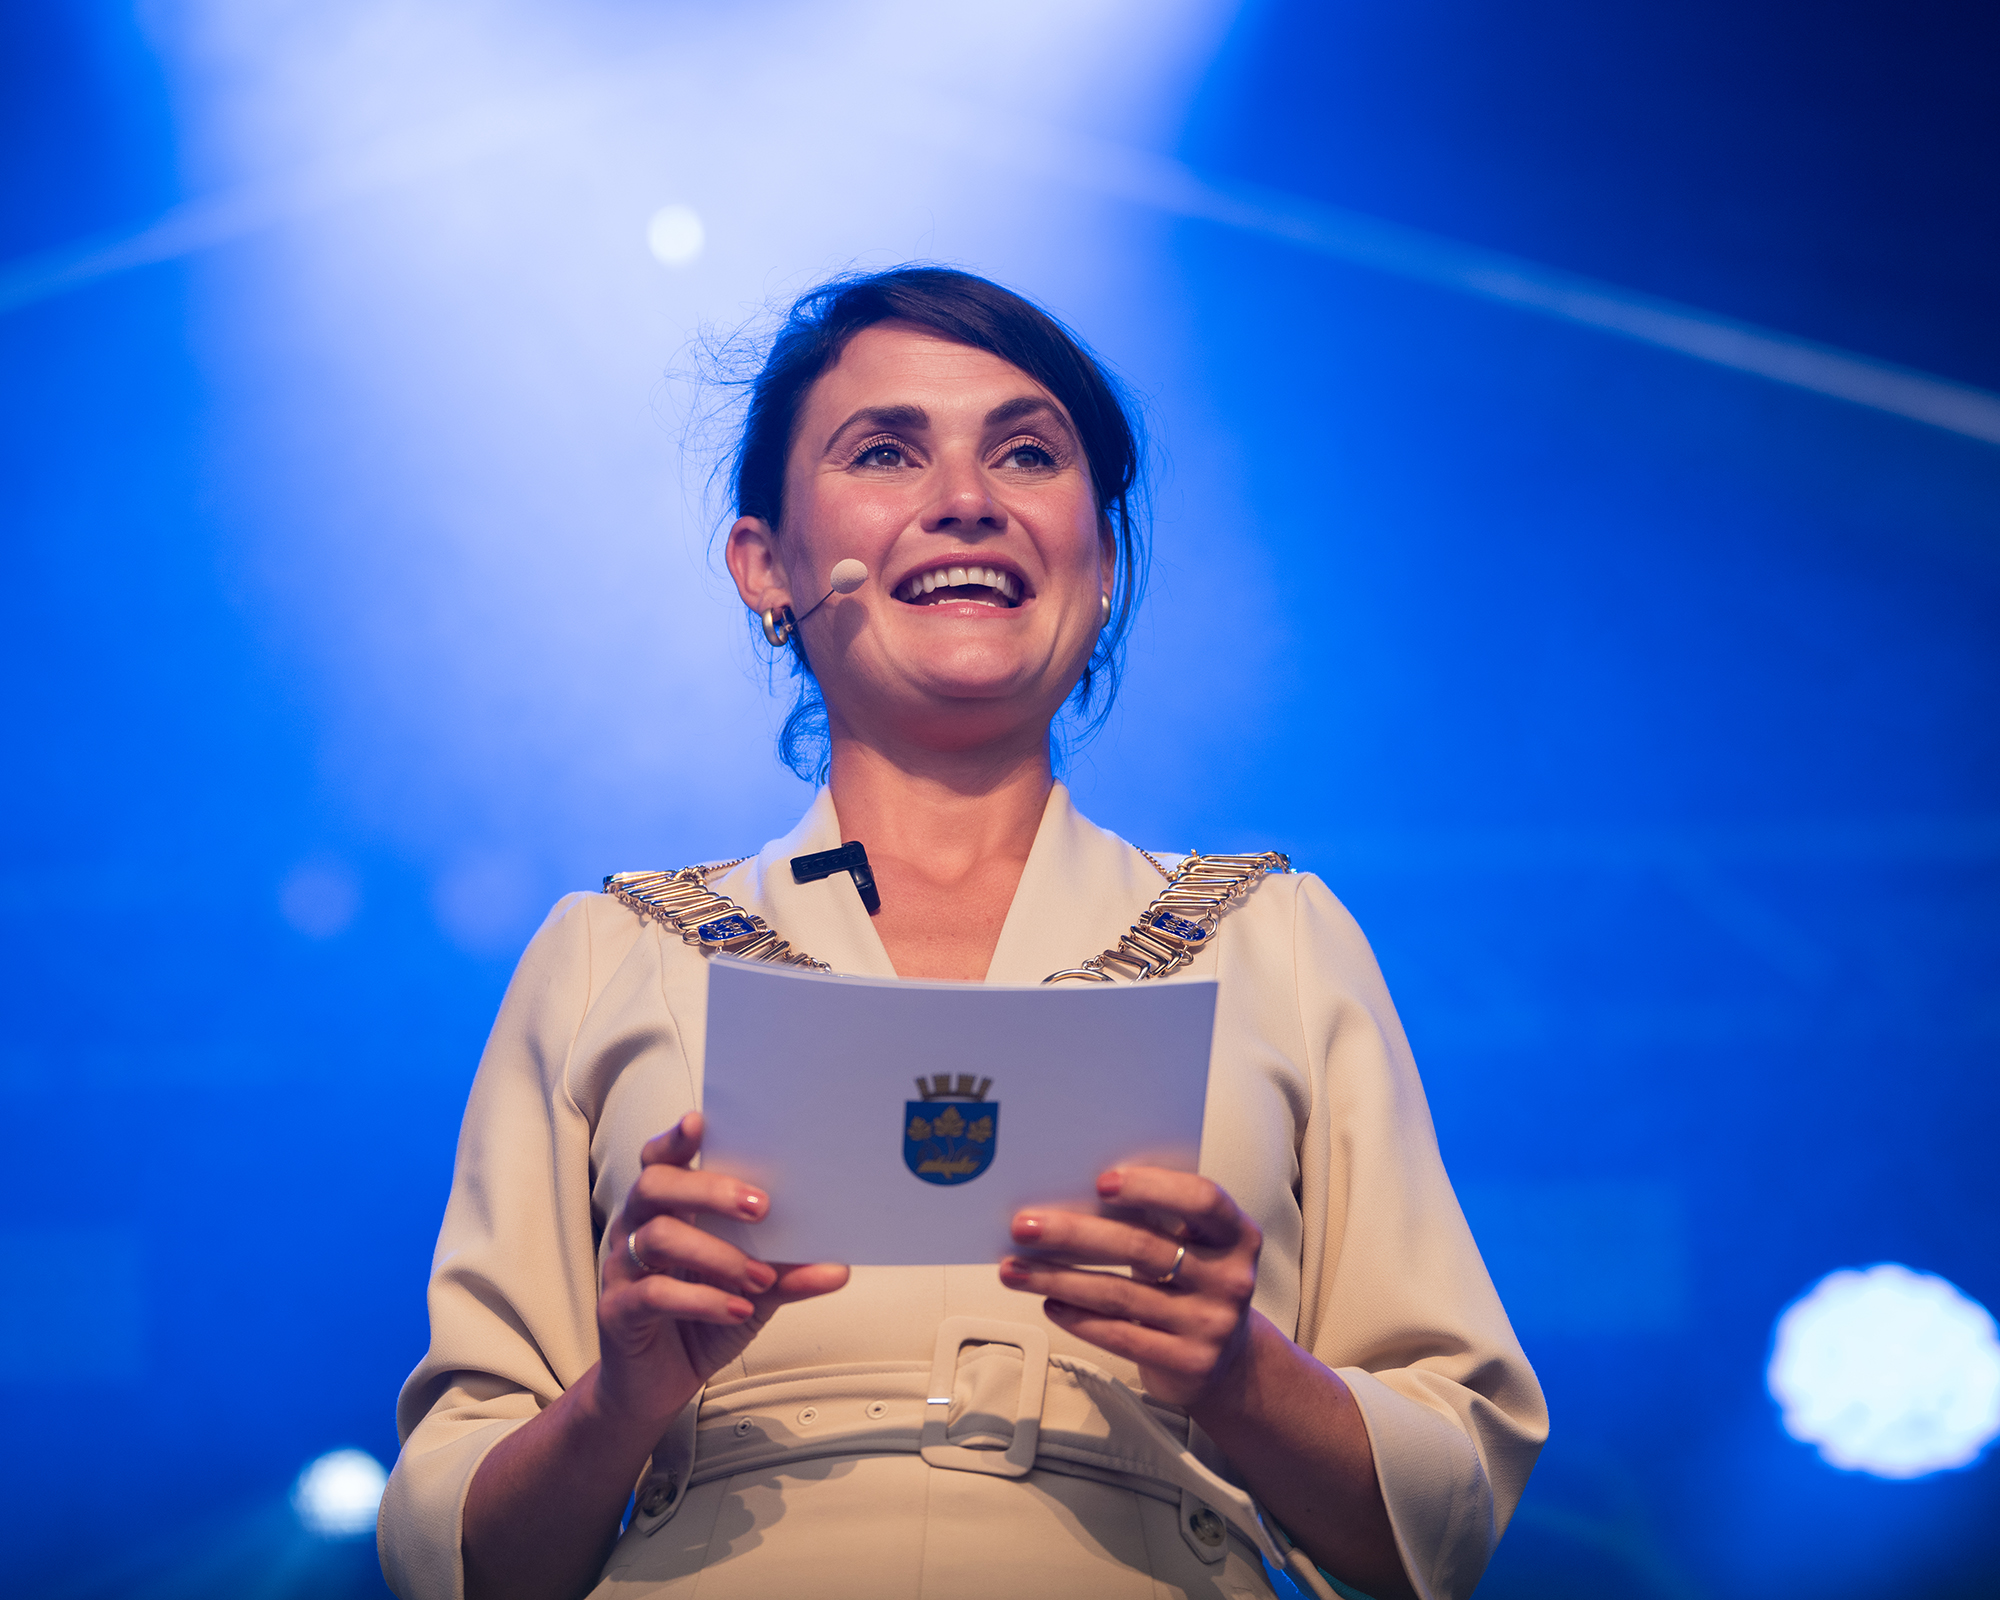 Kvinne med ordførerkjede og talekort med kommunevapen smiler fra scenen